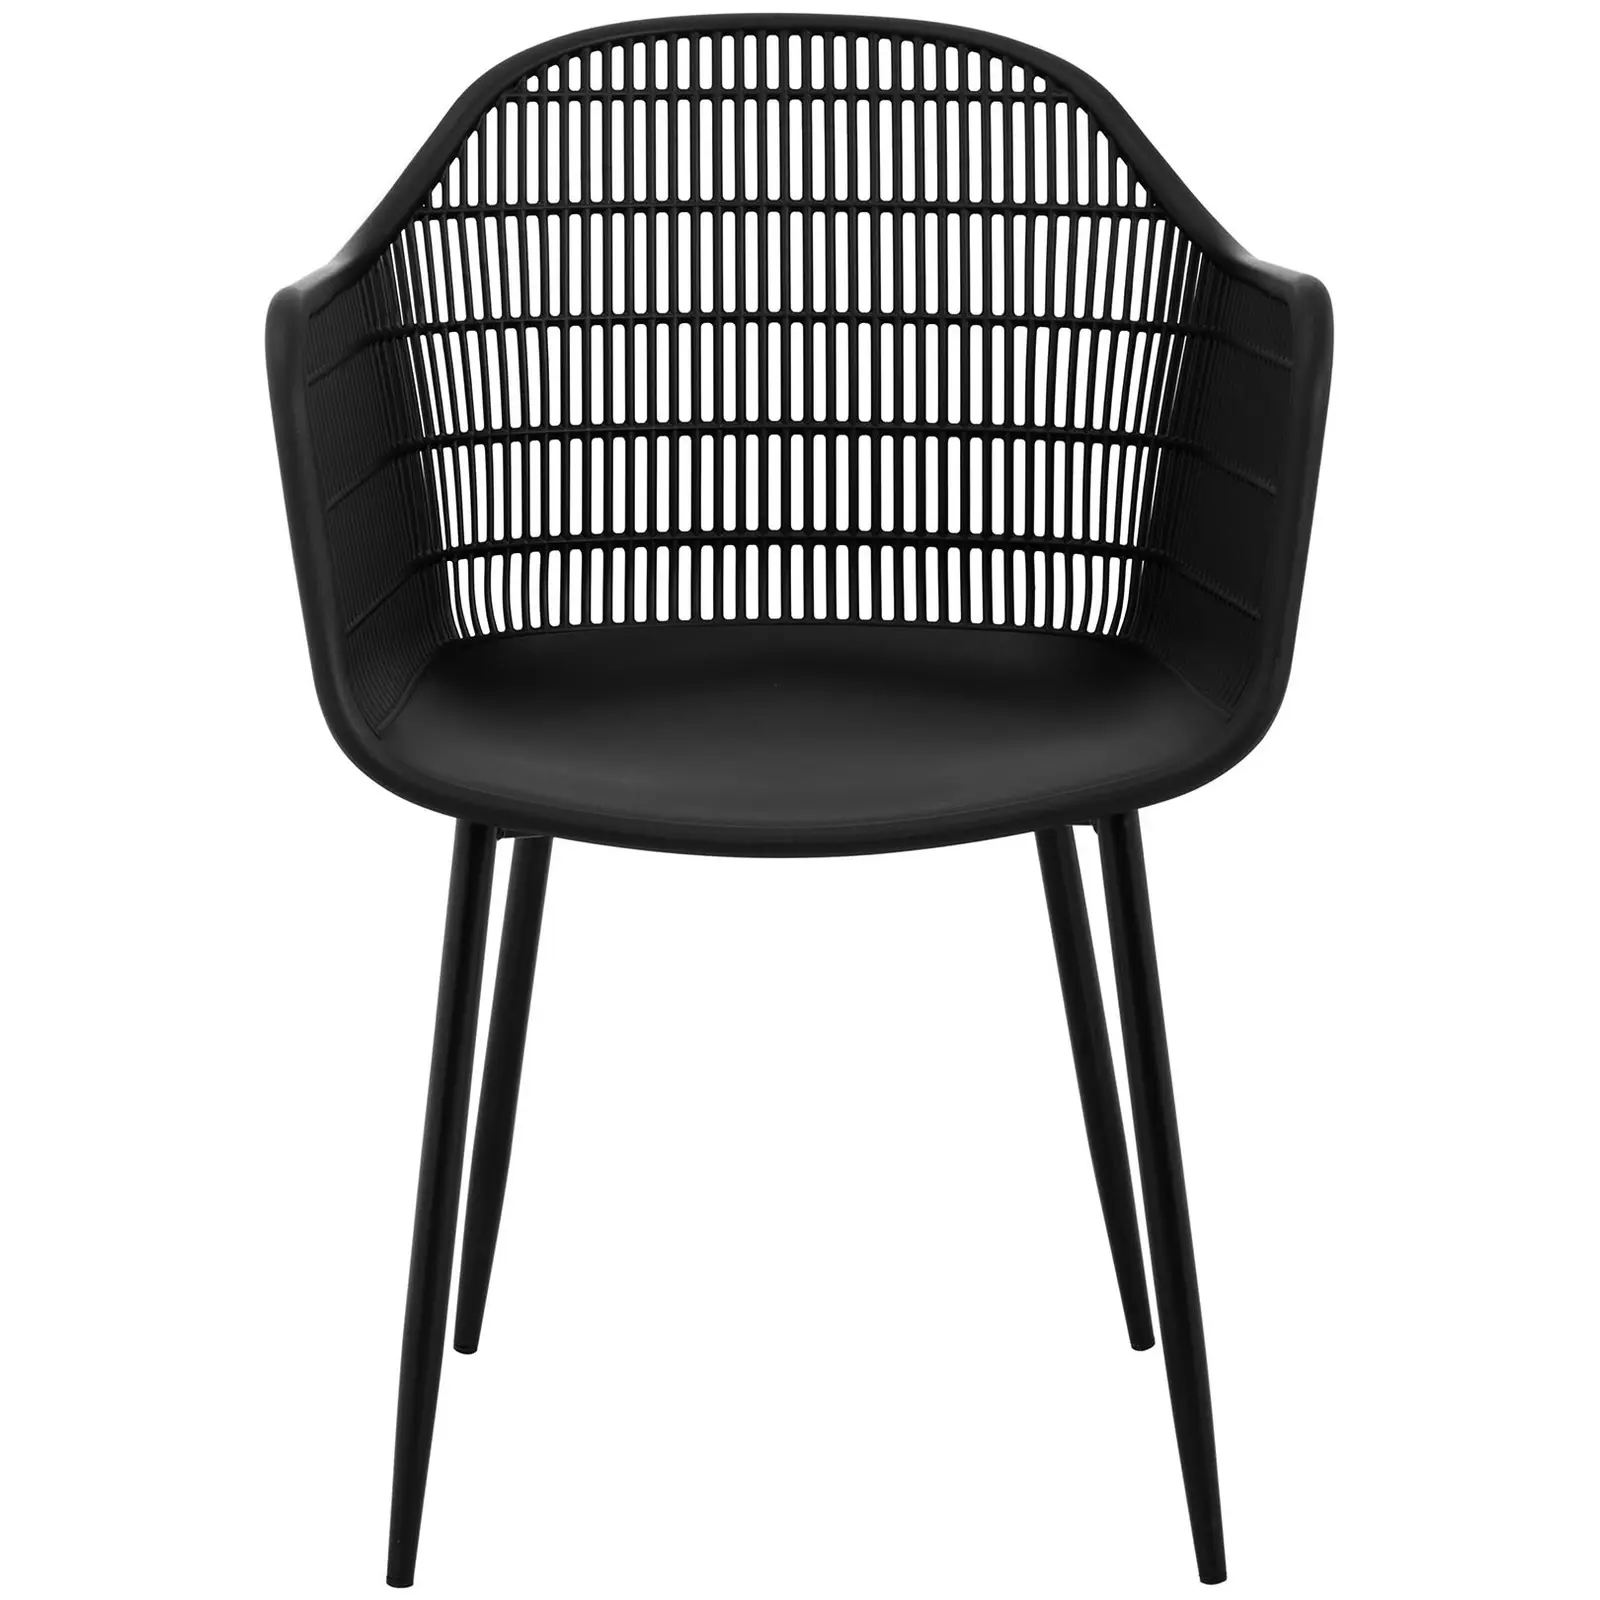 Židle - 2dílná sada - až 150 kg - sedák 45 x 44 cm - černá